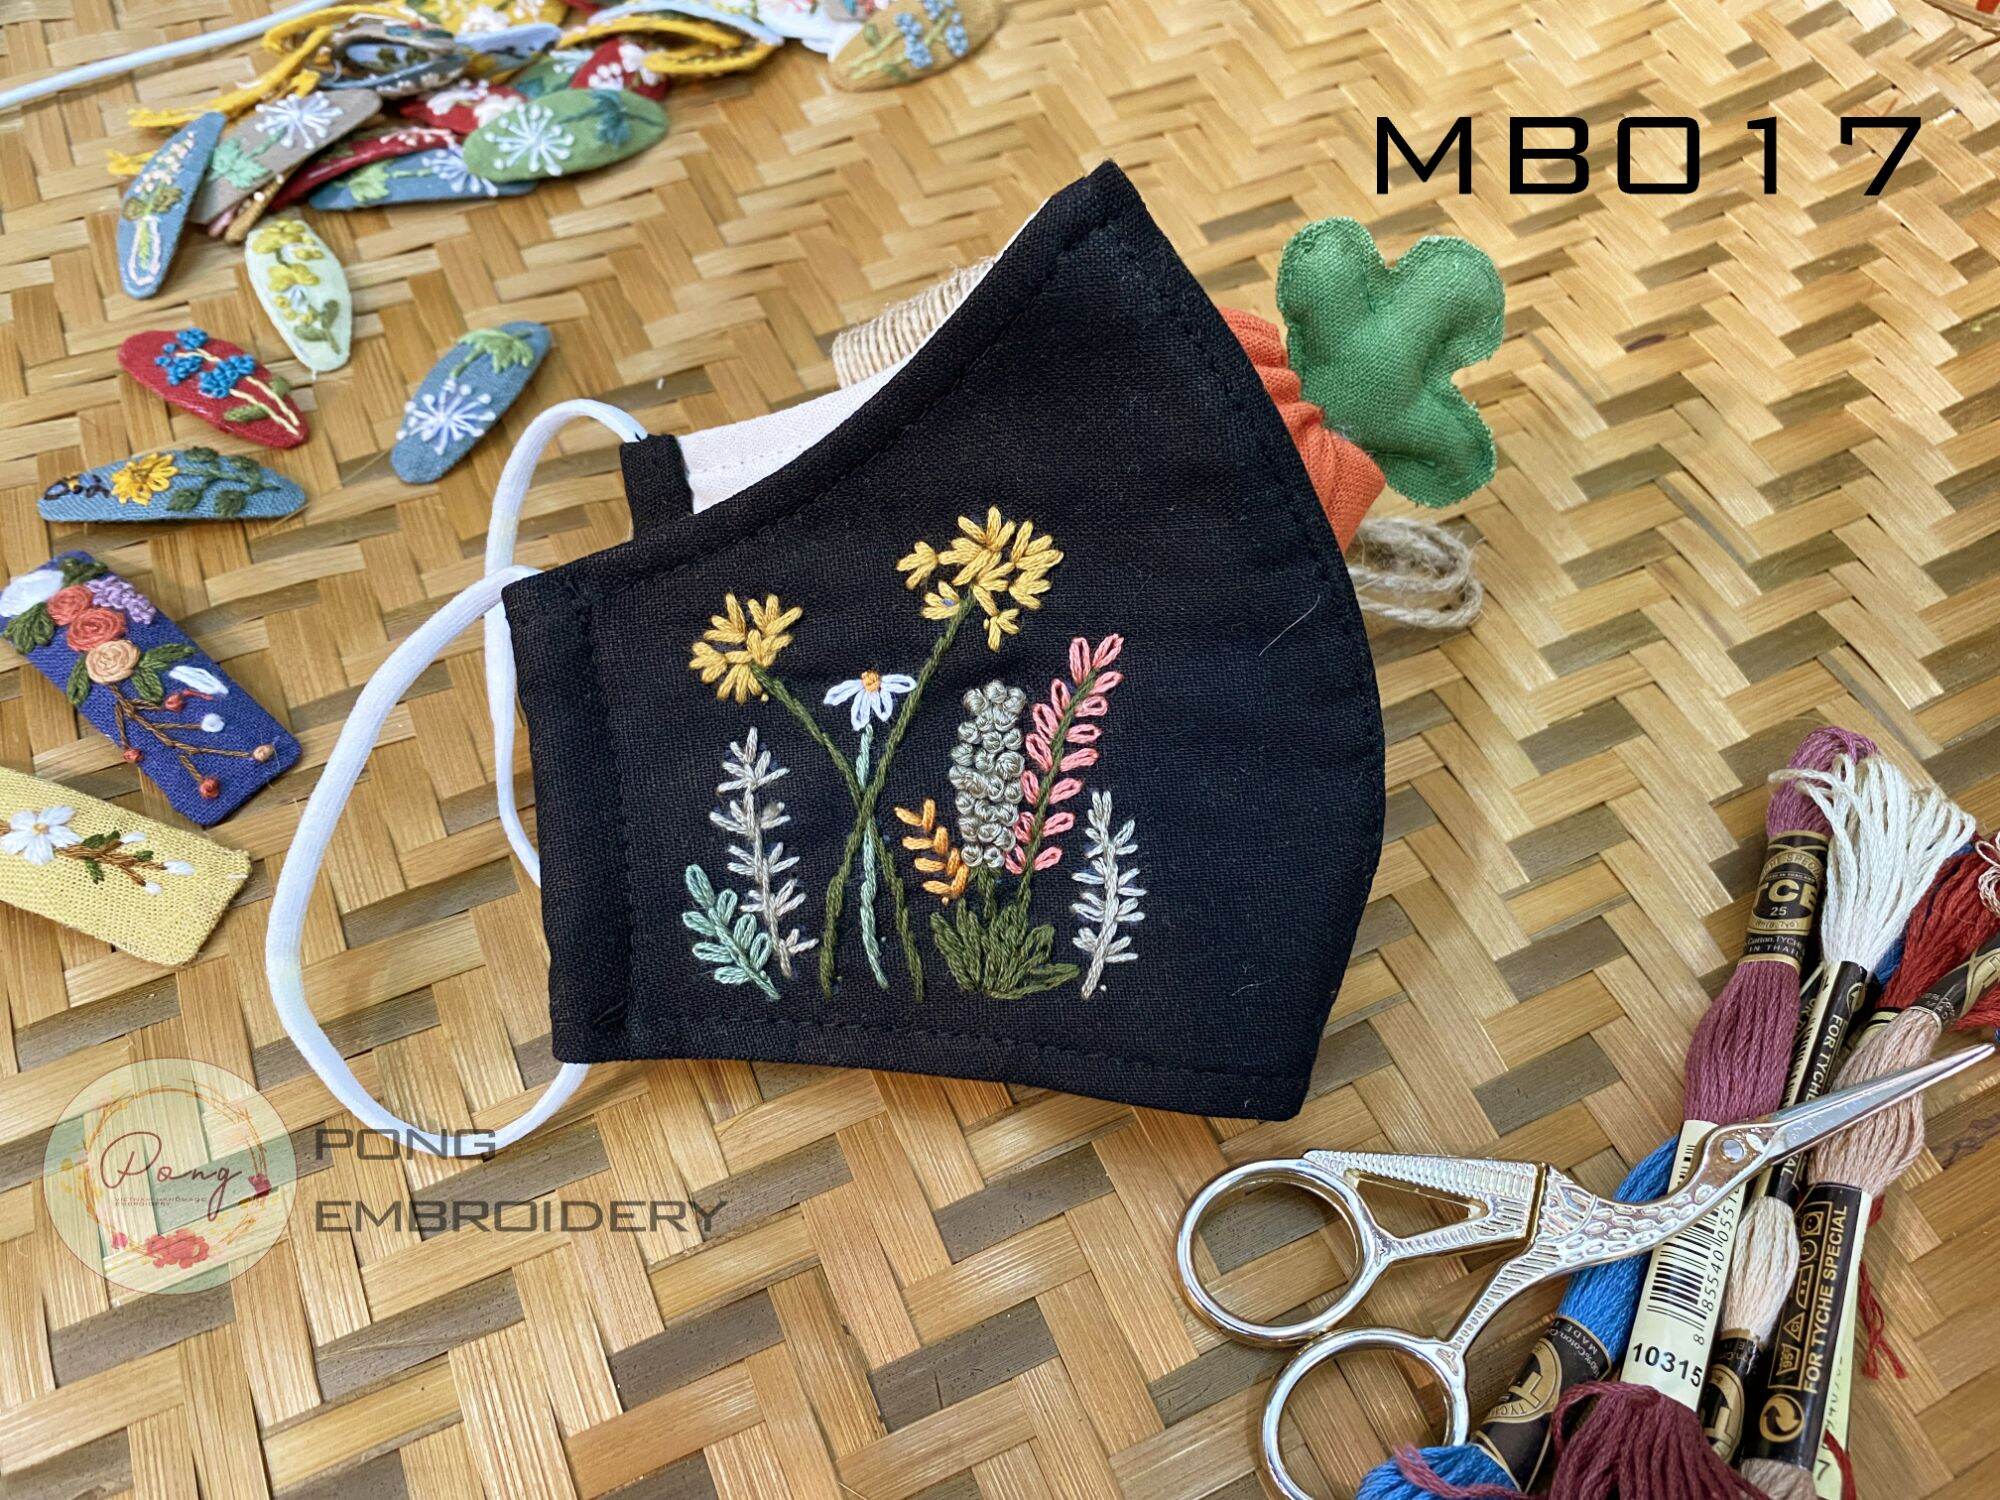 Khẩu Trang Vải Thêu Tay Thủ Công Kháng Khuẩn 3 Lớp Linen - Pong Embroidery